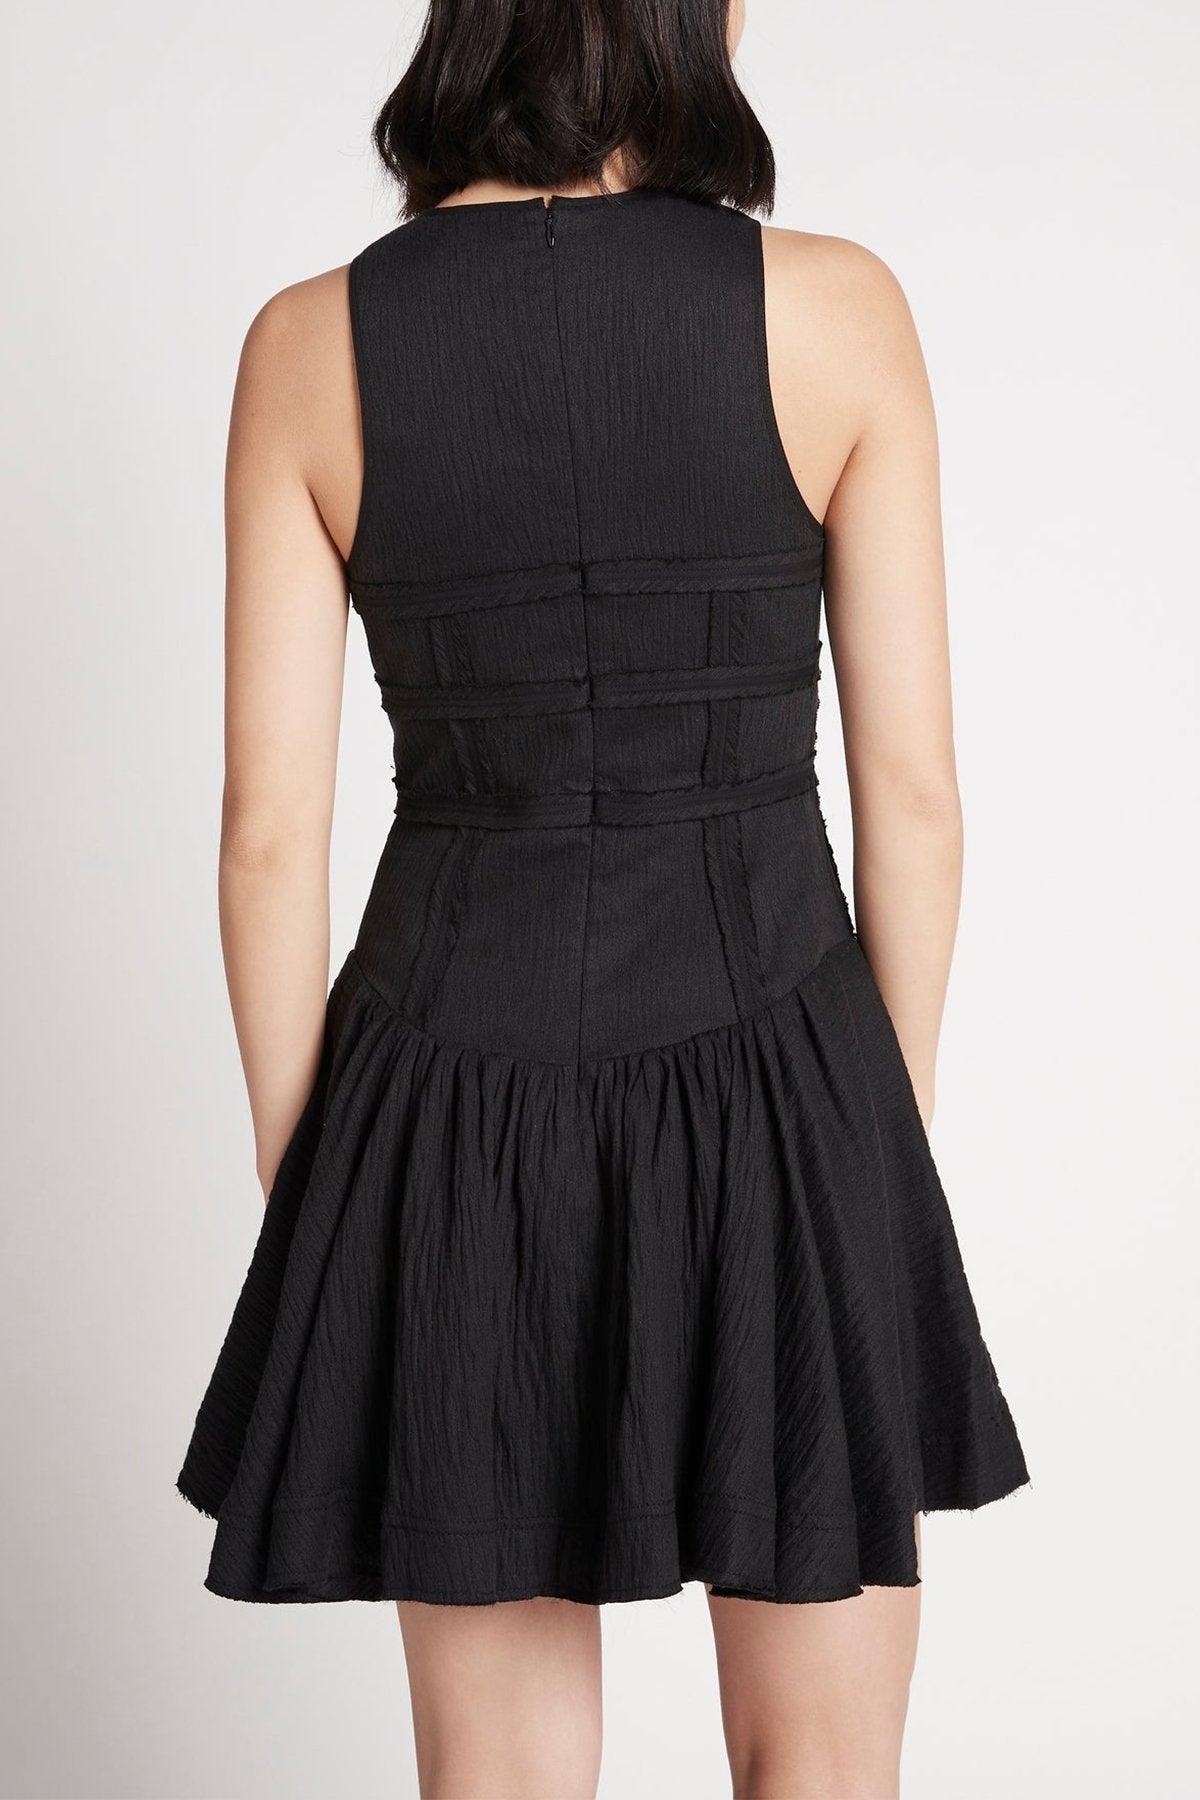 Tidal Corset Mini Dress in Black - shop-olivia.com